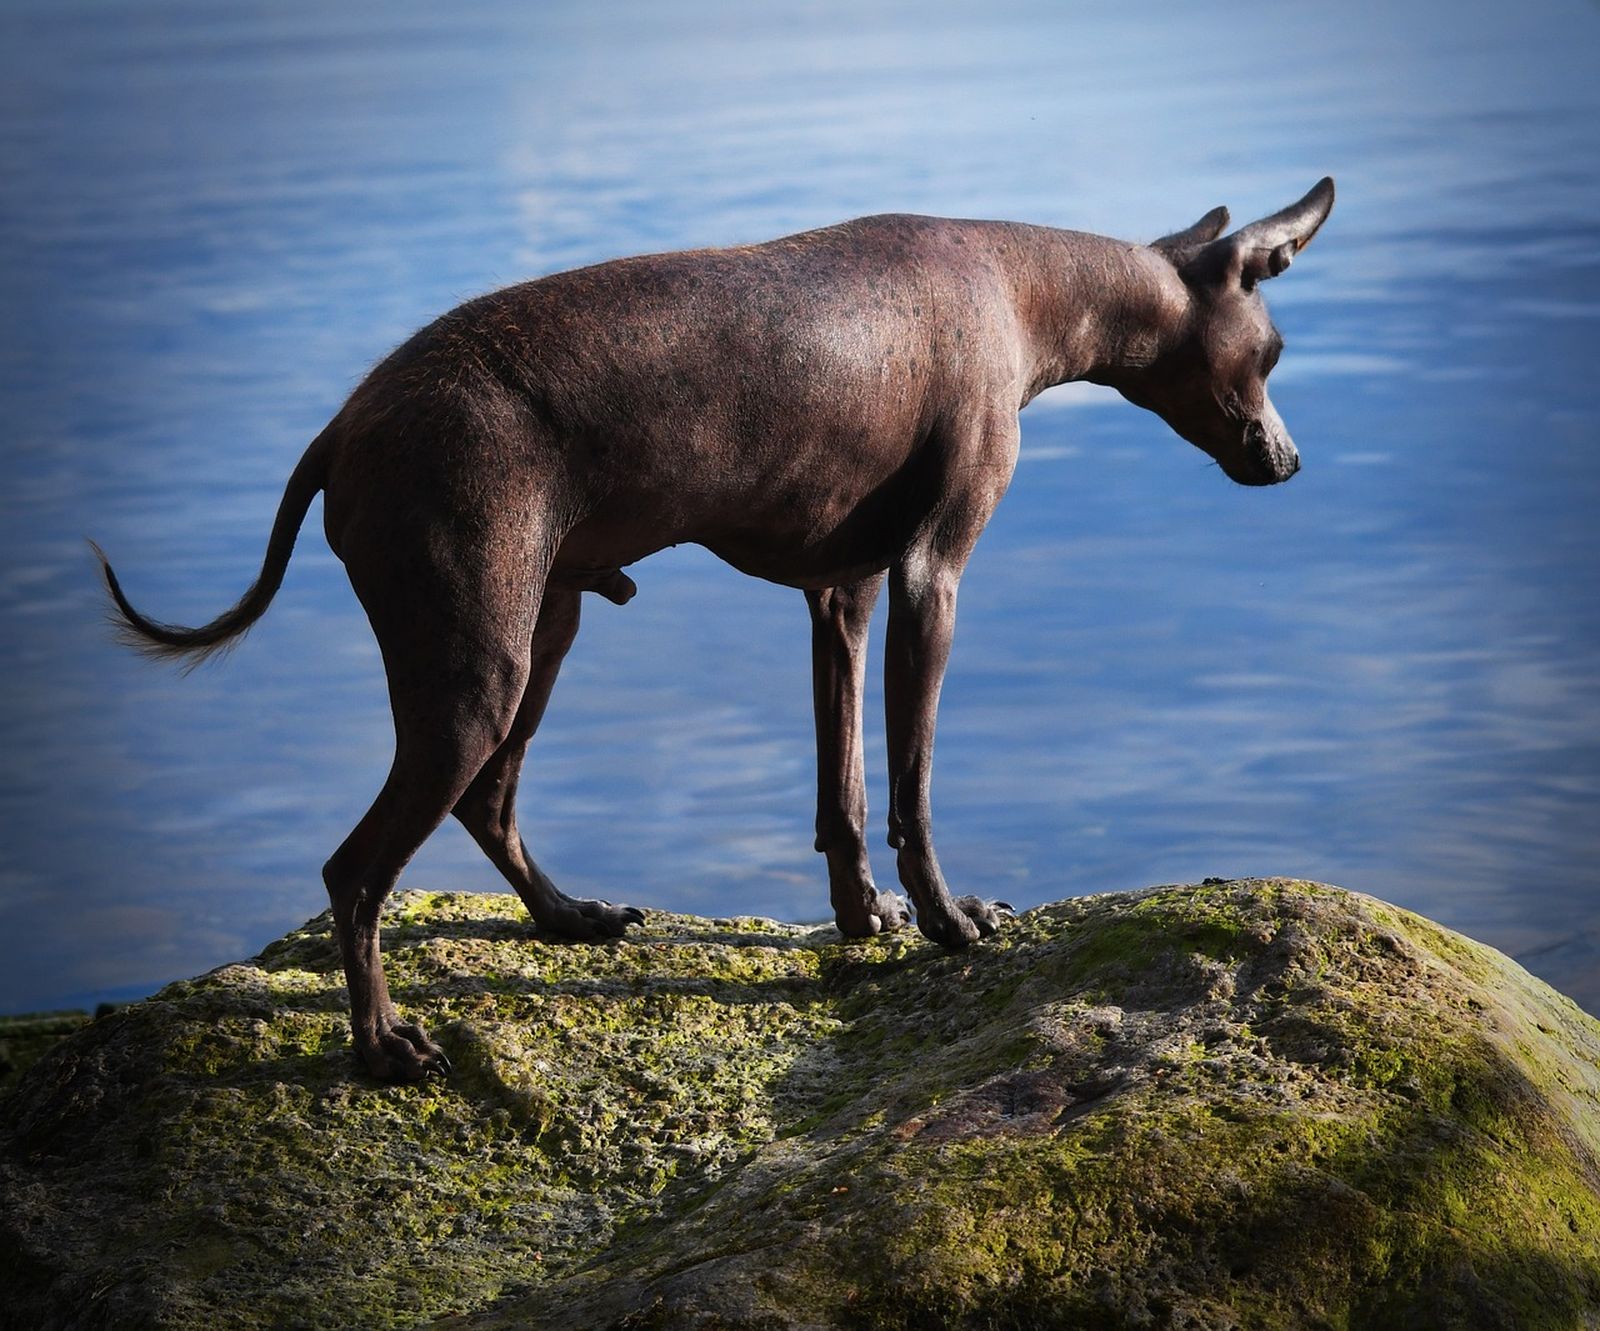 Ein haarloser Mexikanischer Nackthund steht auf einem algenbewachsenen Felsen direkt am Wasser und schaut aufmerksam auf die Wasseroberfläche